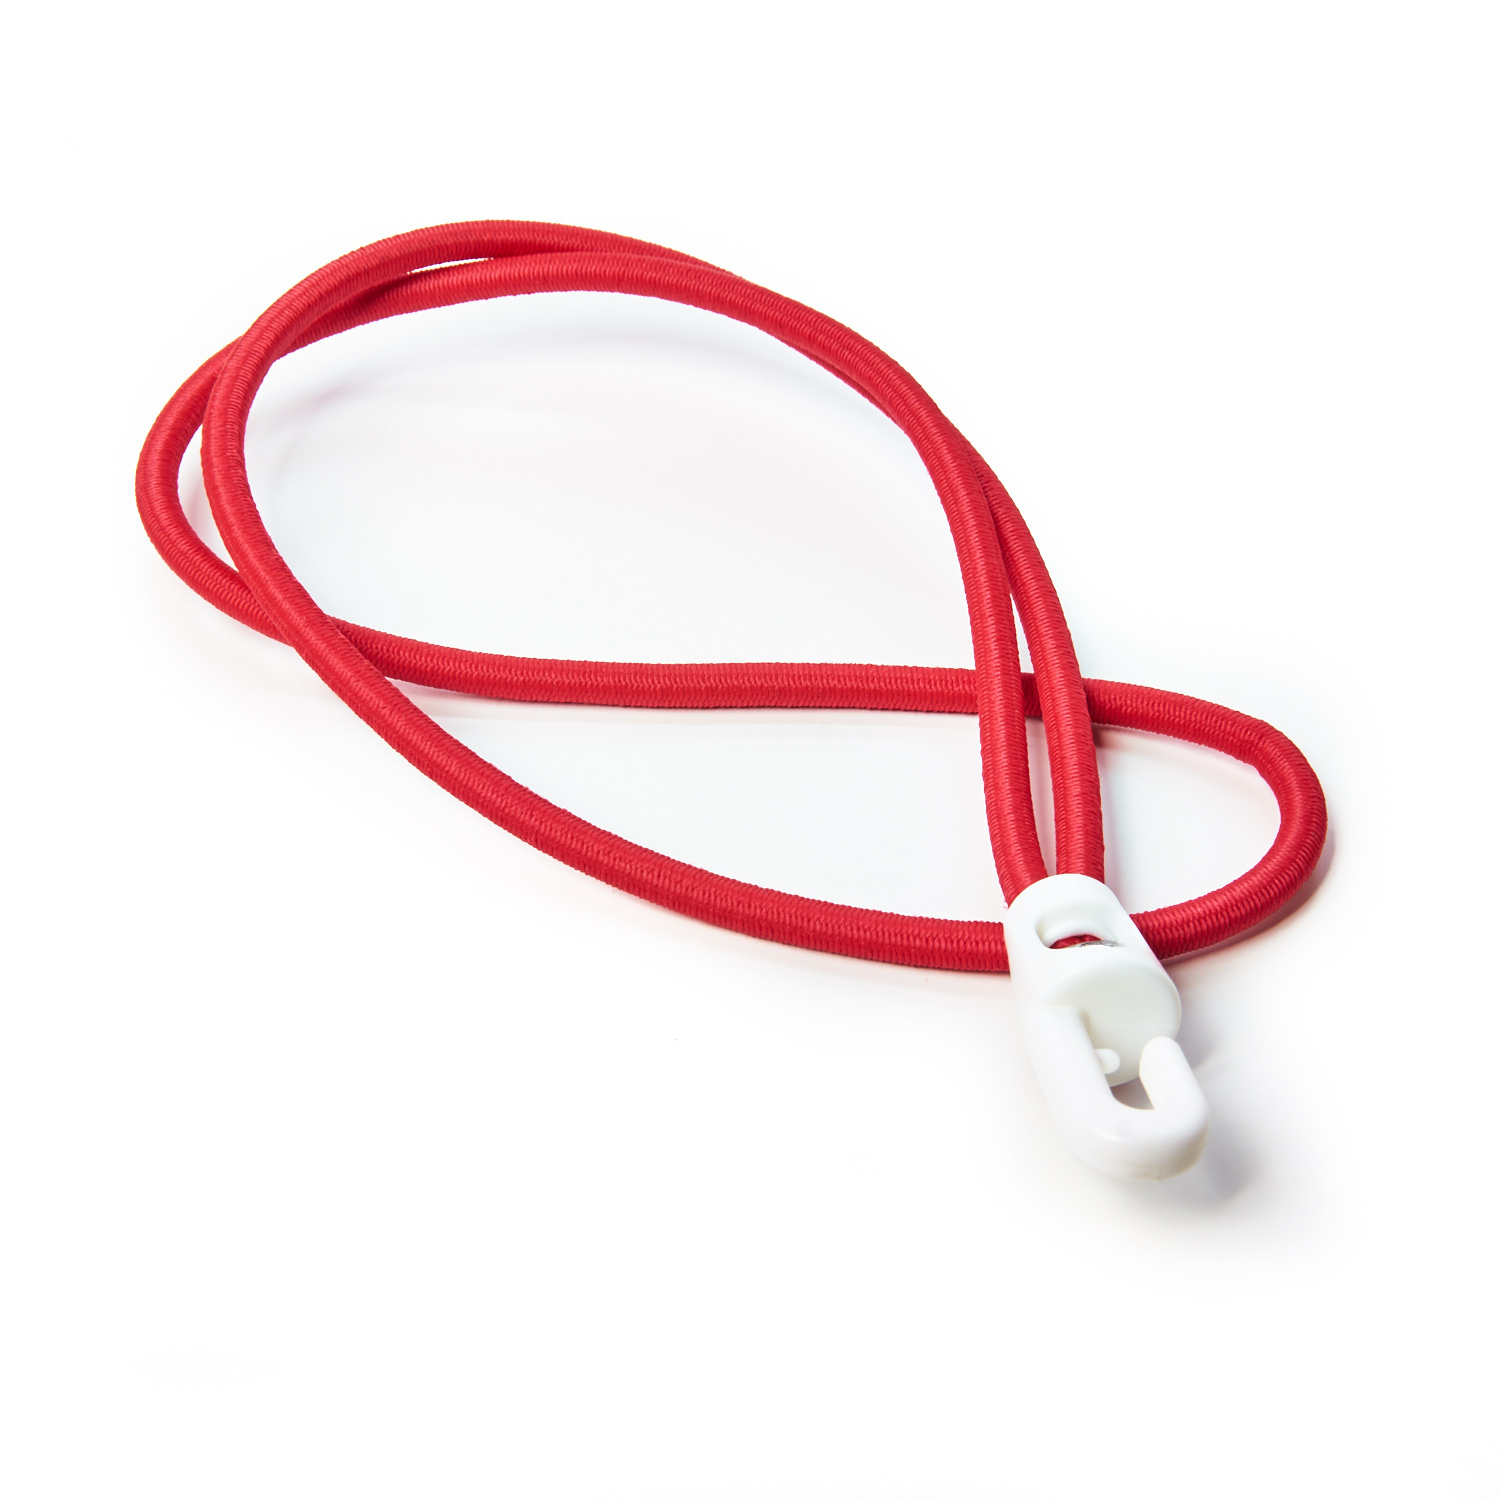 Plastic Hook Ties Bungee Cord Shock Cord Red Elastic